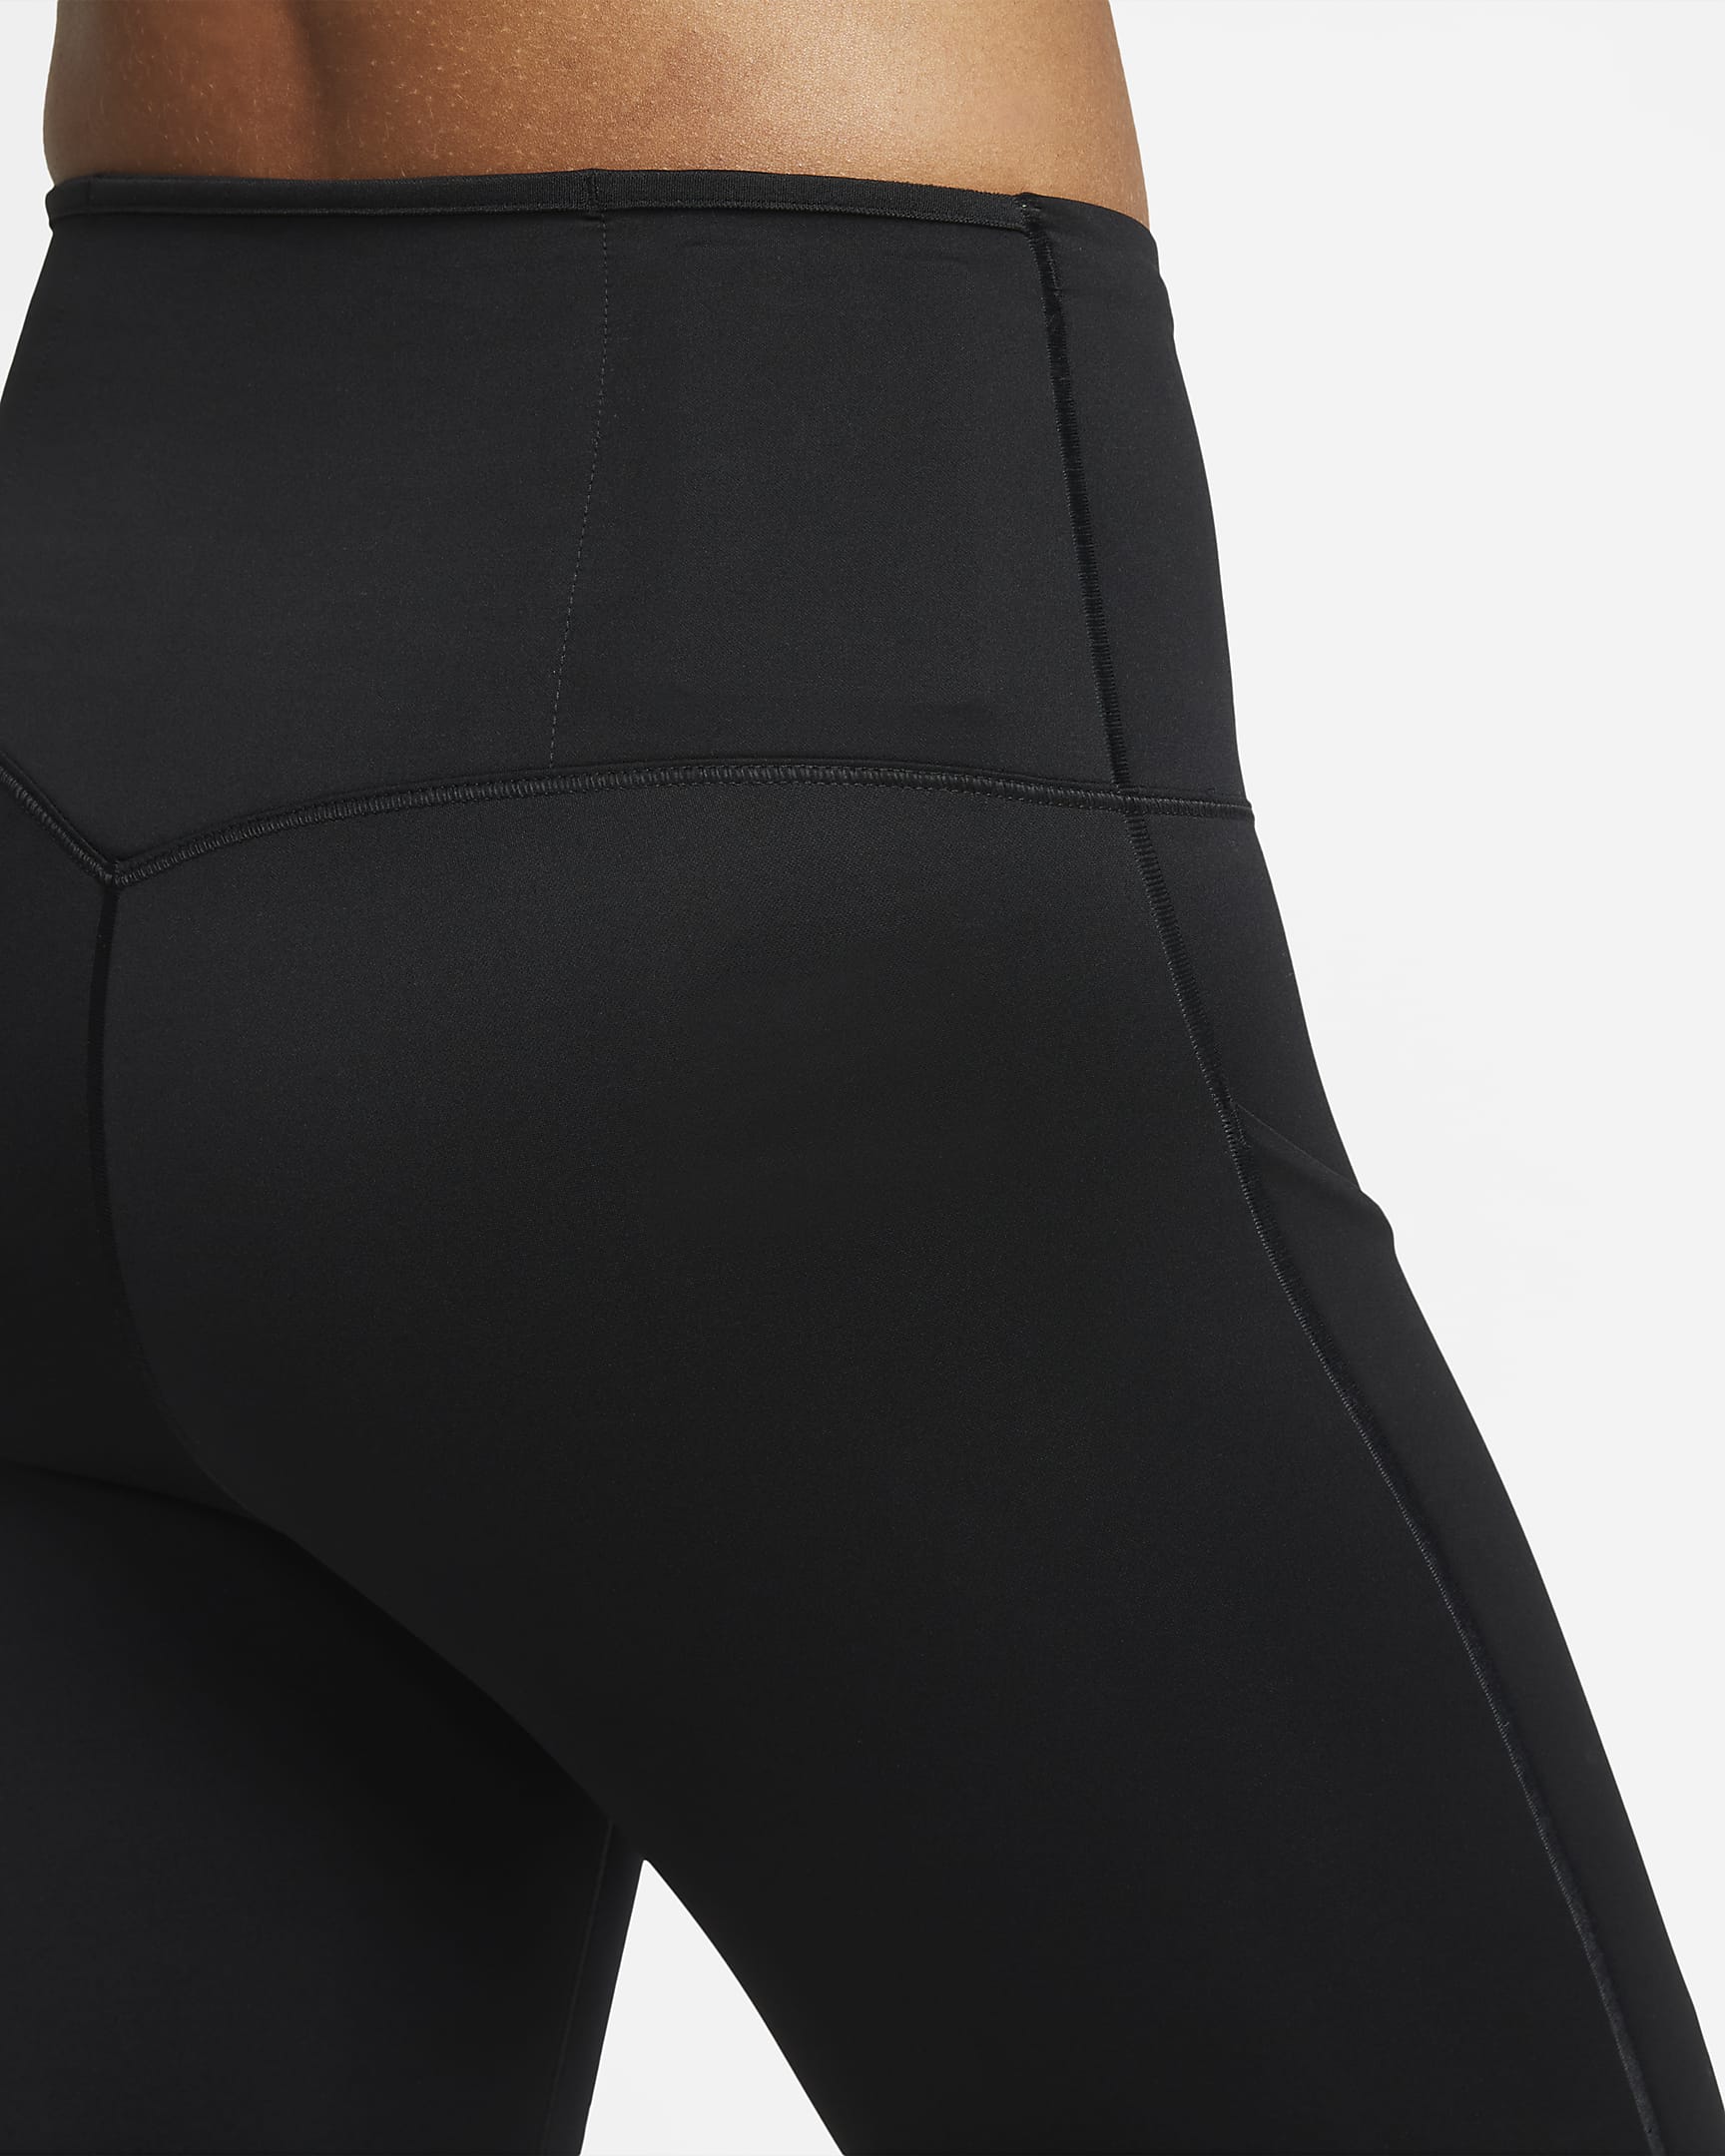 Leggings a todo o comprimento de cintura subida e suporte firme com bolsos Nike Go para mulher - Preto/Preto